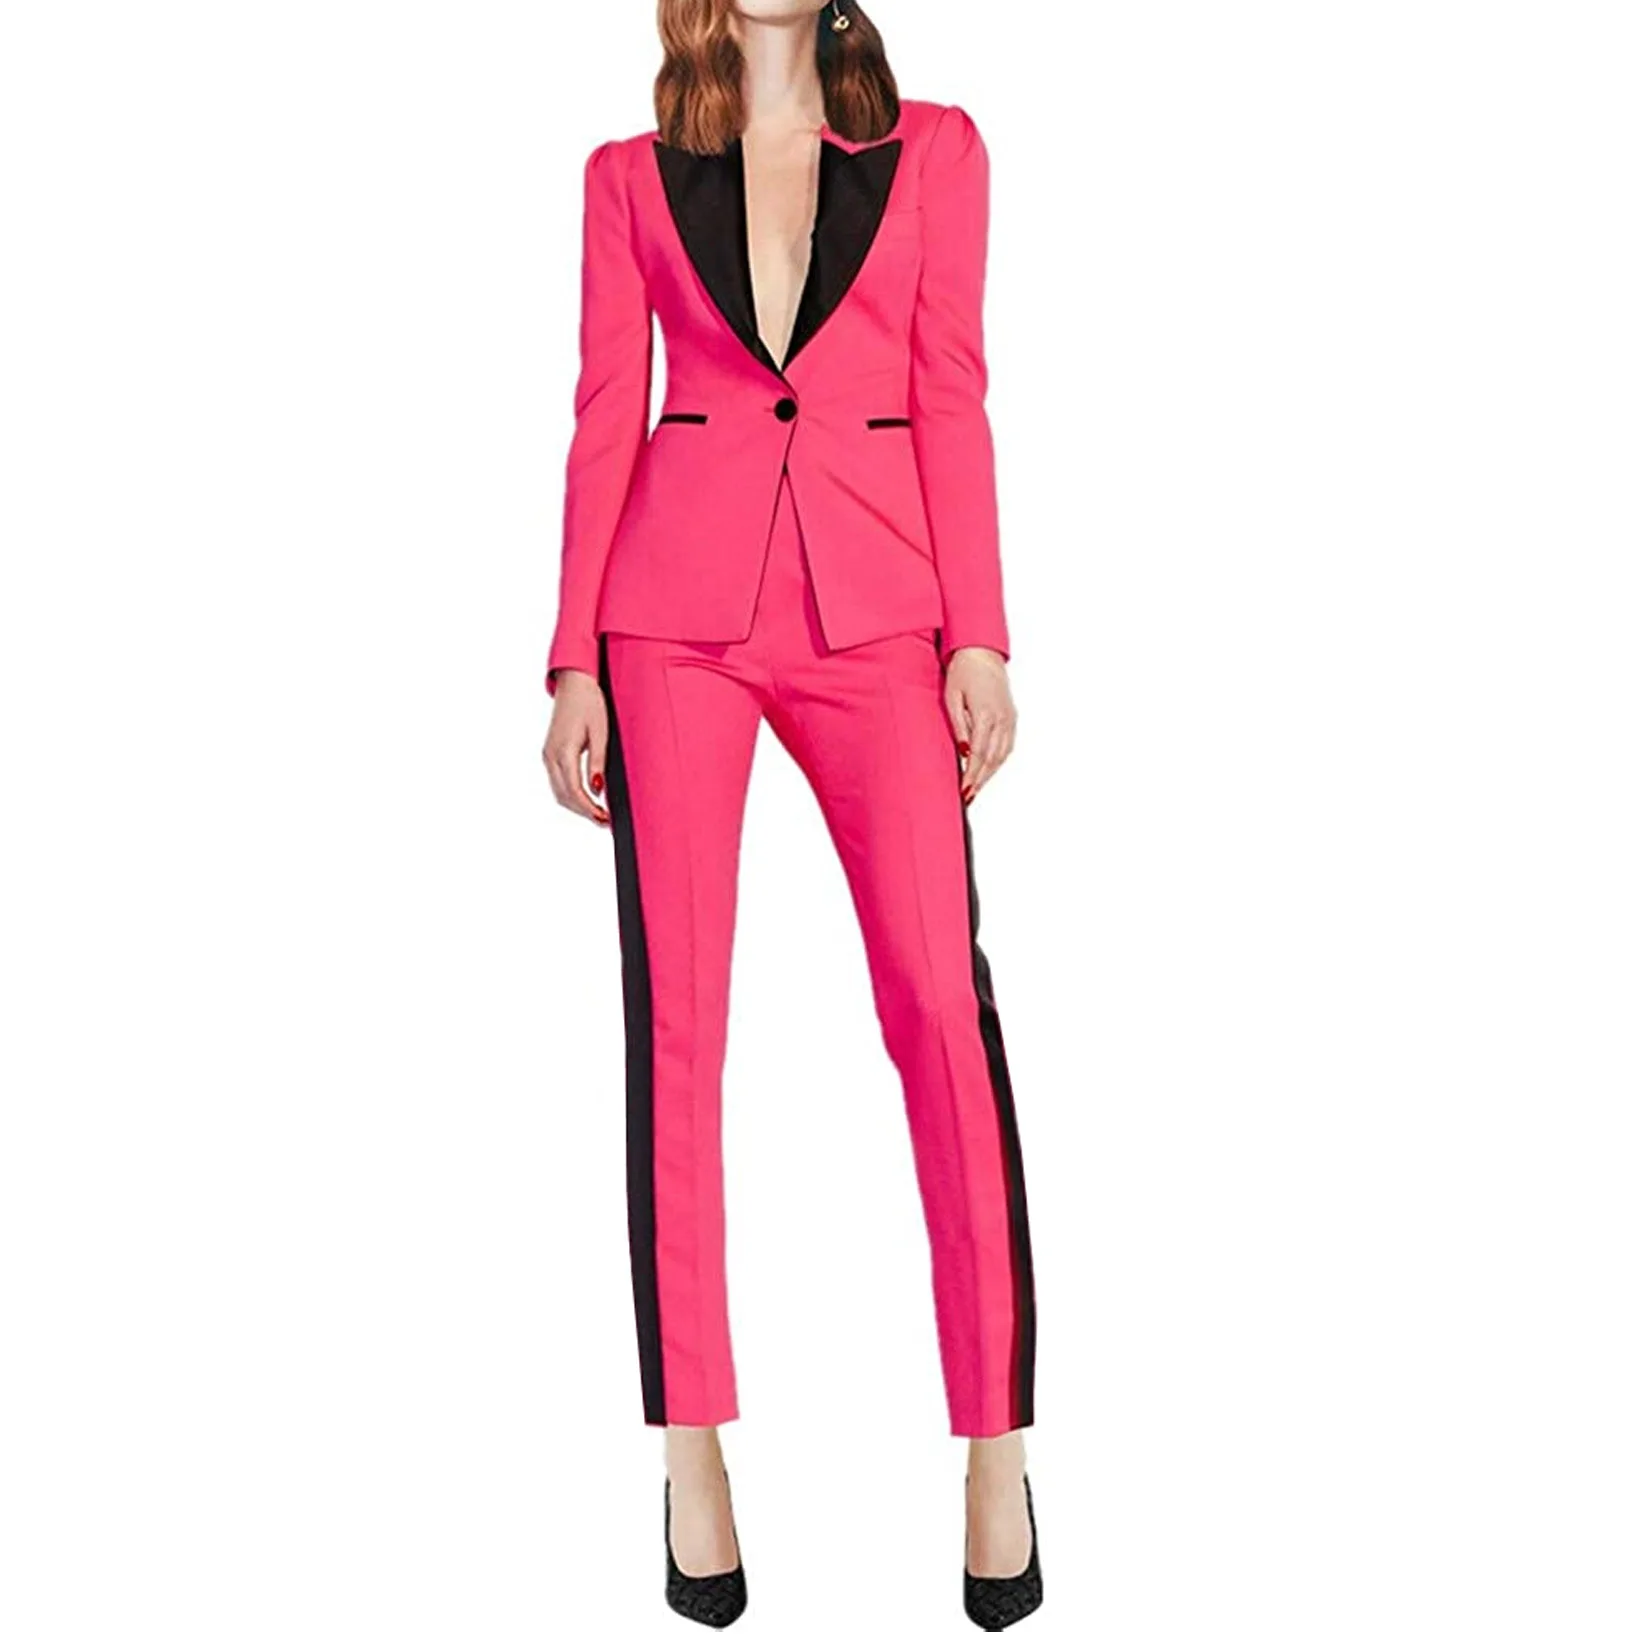 Jacket + Pants Women's Splicing Color Business Suits Women's Office Uniforms Women's Formal Suits Pants Sets Fit Women's Tuxedos